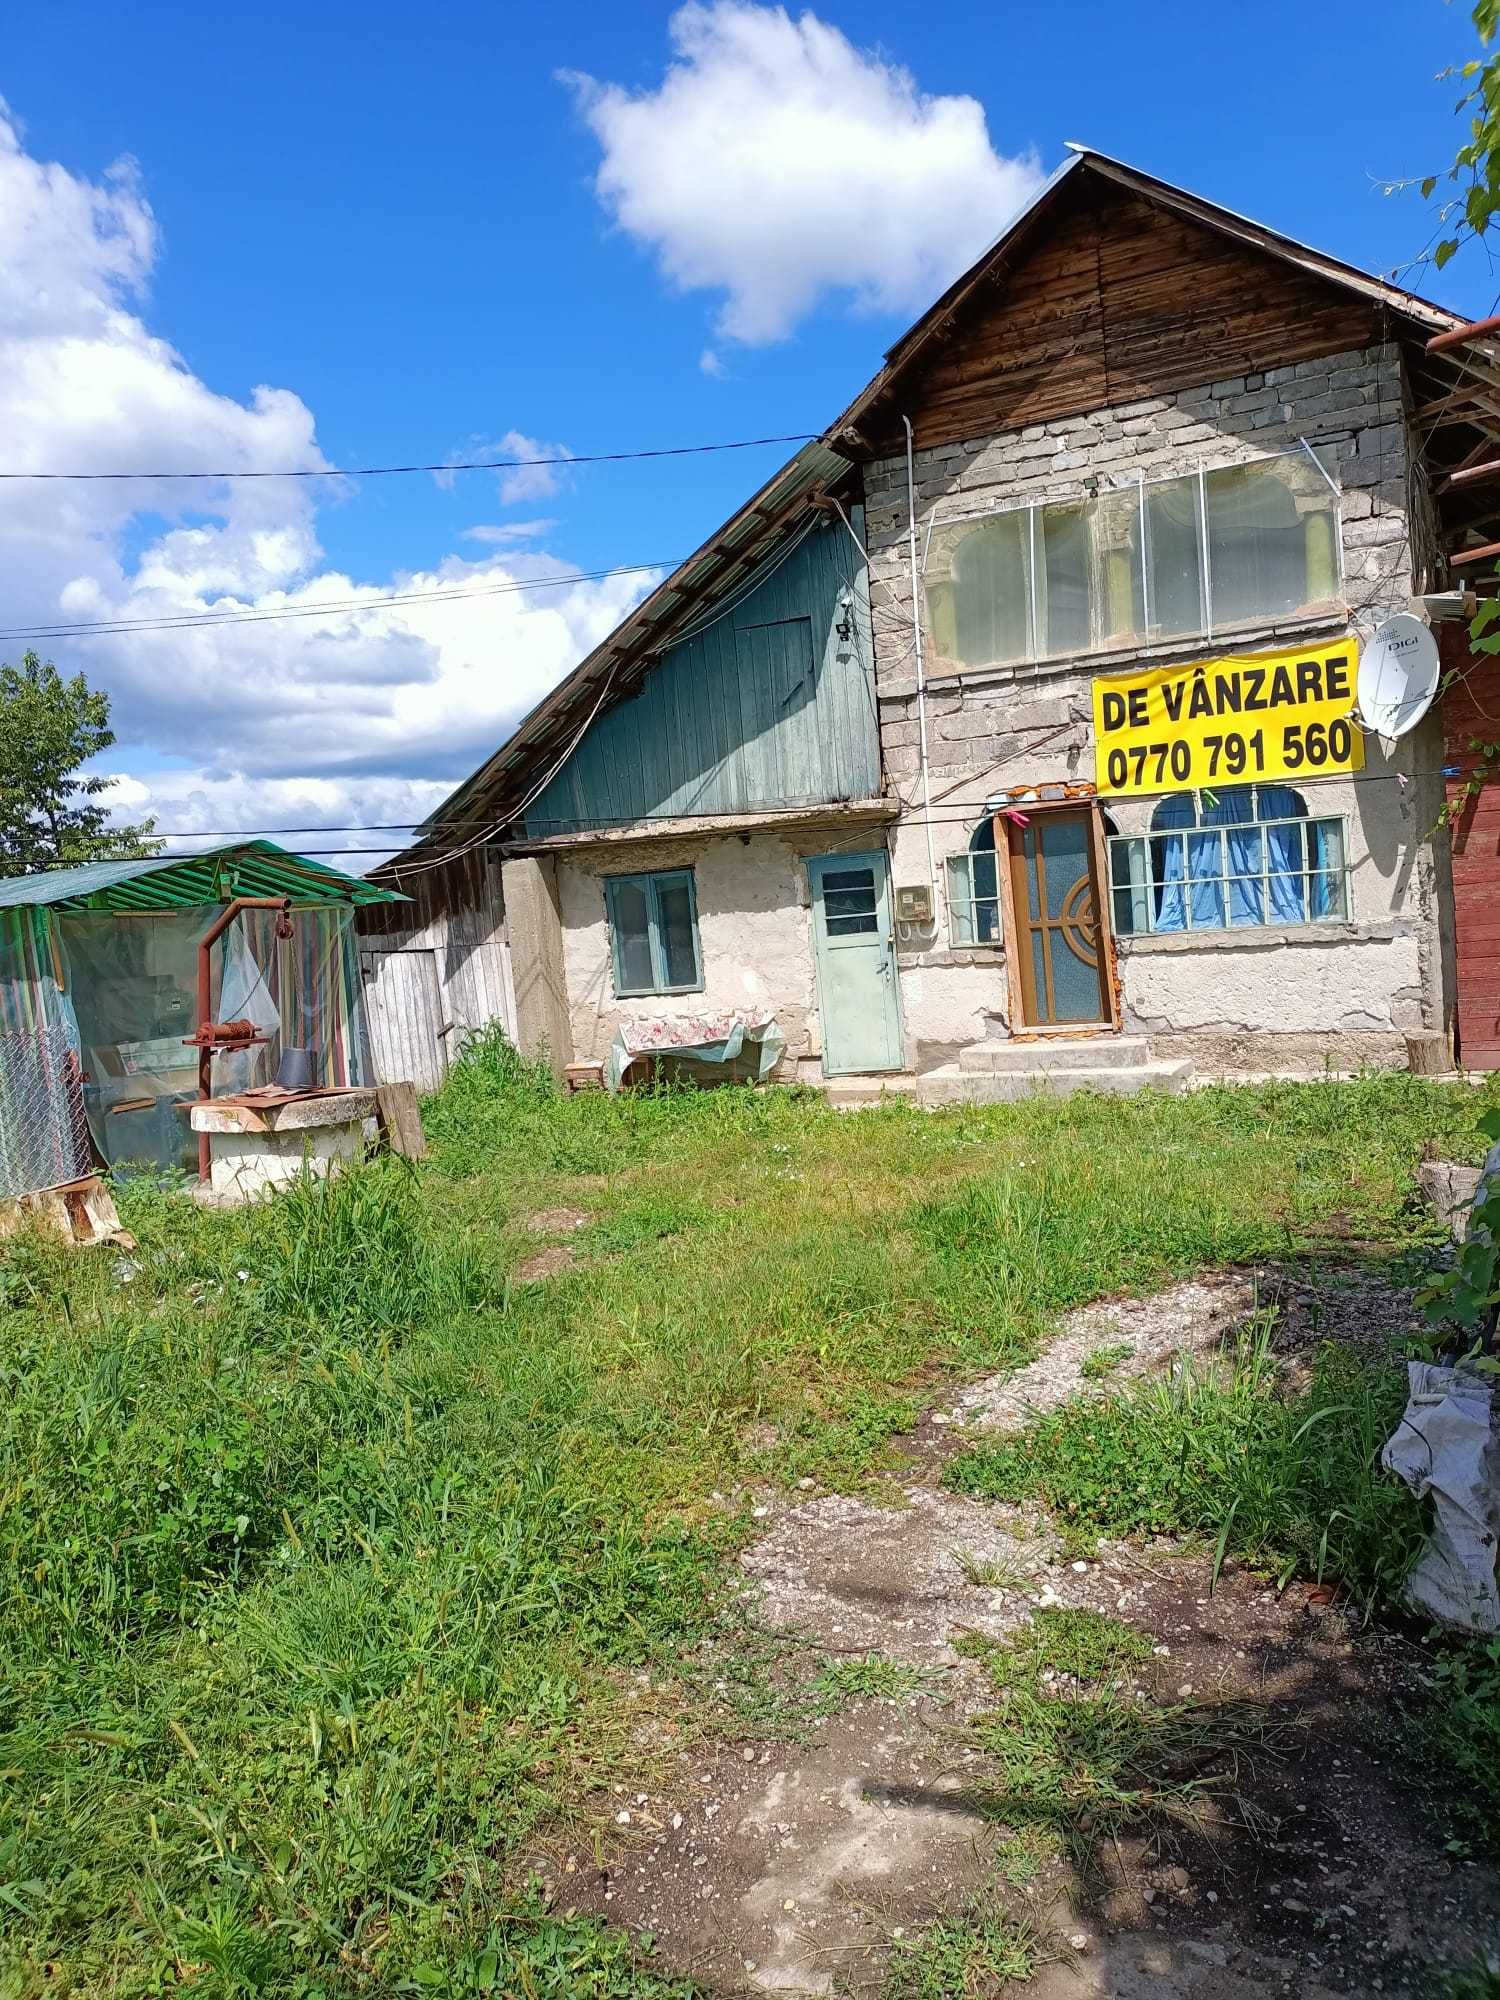 Vânzare casă țară Dâmbovița